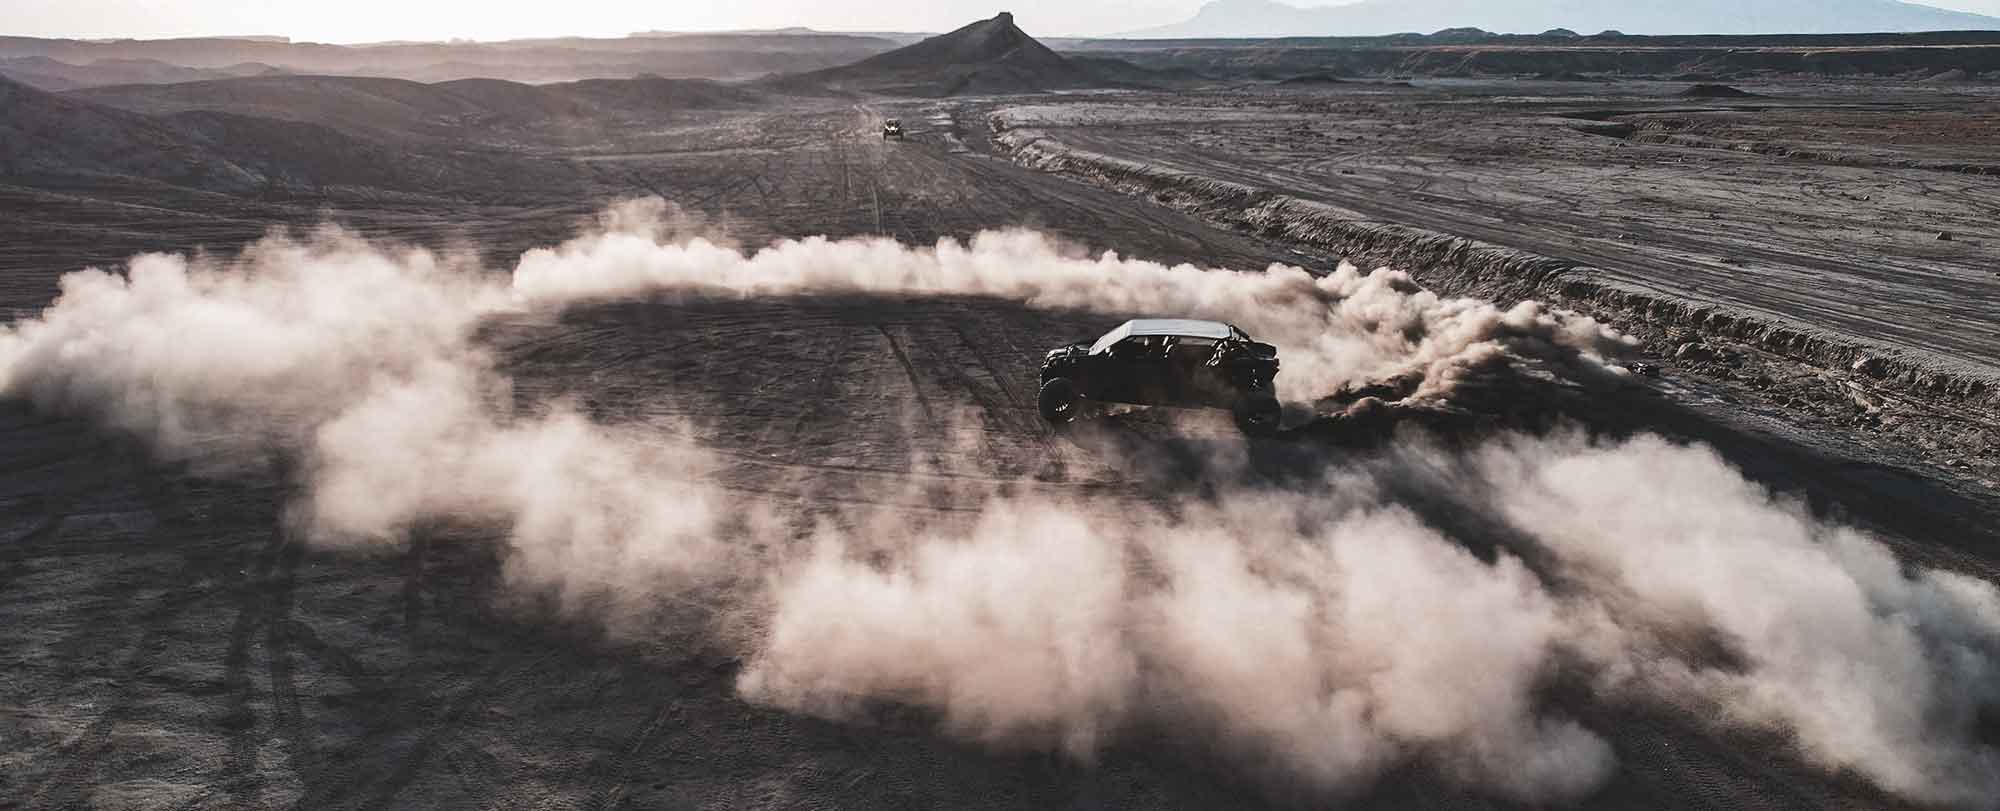 Action utv desert dust dusty sand canam